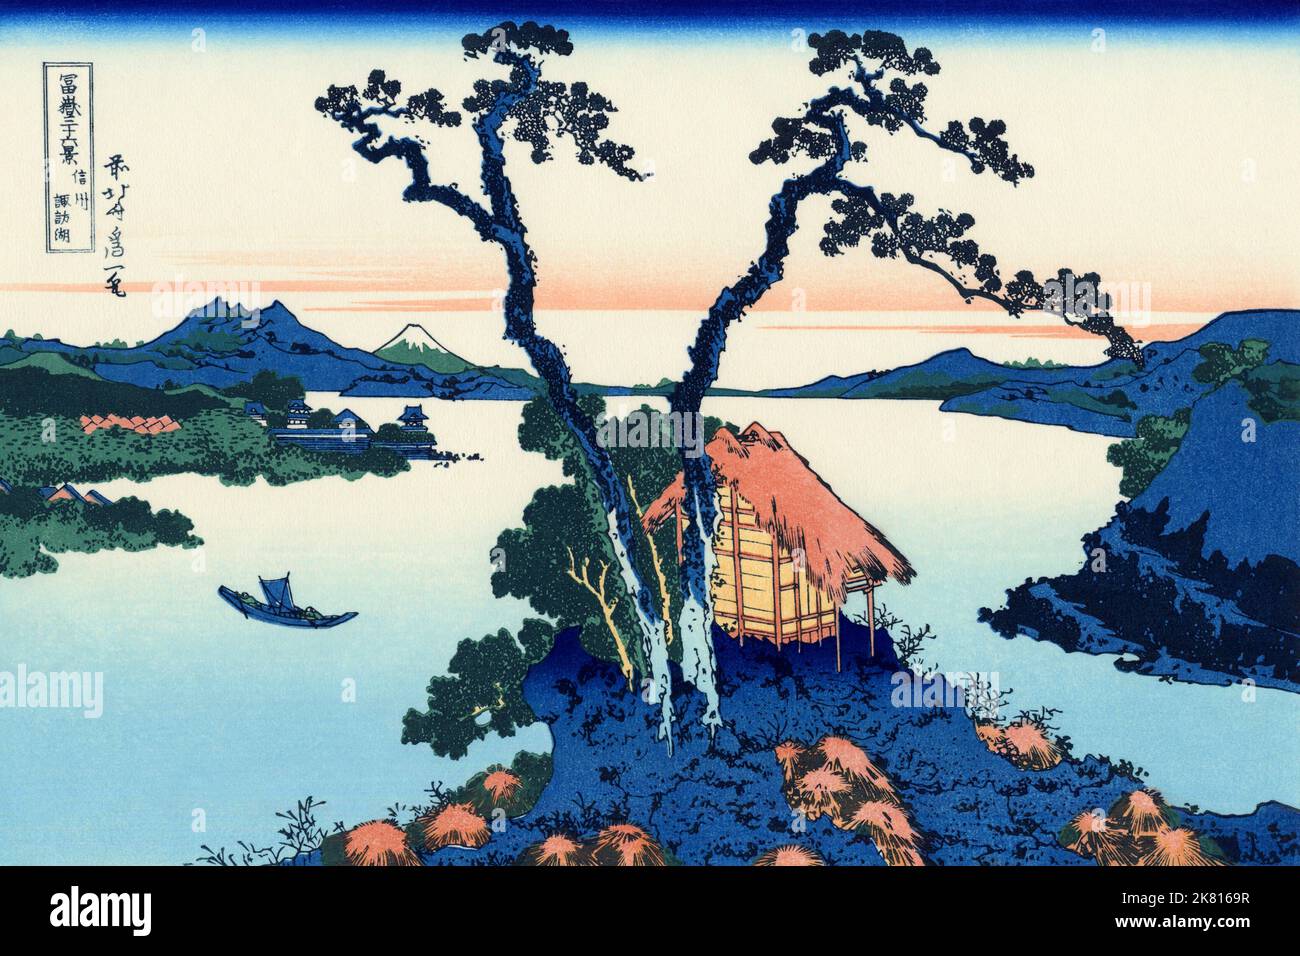 Japon: «Lac Suwa dans la province de Shinano».Imprimé Ukiyo-e en blocs de bois de la série «trente-six vues du Mont Fuji» de Katsushika Hokusai (31 octobre 1760 - 10 mai 1849), c.1830. «36 vues du Mont Fuji» est une série «ukiyo-e» de grandes gravures sur bois de l'artiste Katsushika Hokusai.La série représente le Mont Fuji dans différentes saisons et conditions météorologiques à partir de divers endroits et distances.Il se compose en fait de 46 tirages créés entre 1826 et 1833.Les 36 premiers ont été inclus dans la publication originale et, en raison de leur popularité, 10 autres ont été ajoutés après la publication originale. Banque D'Images